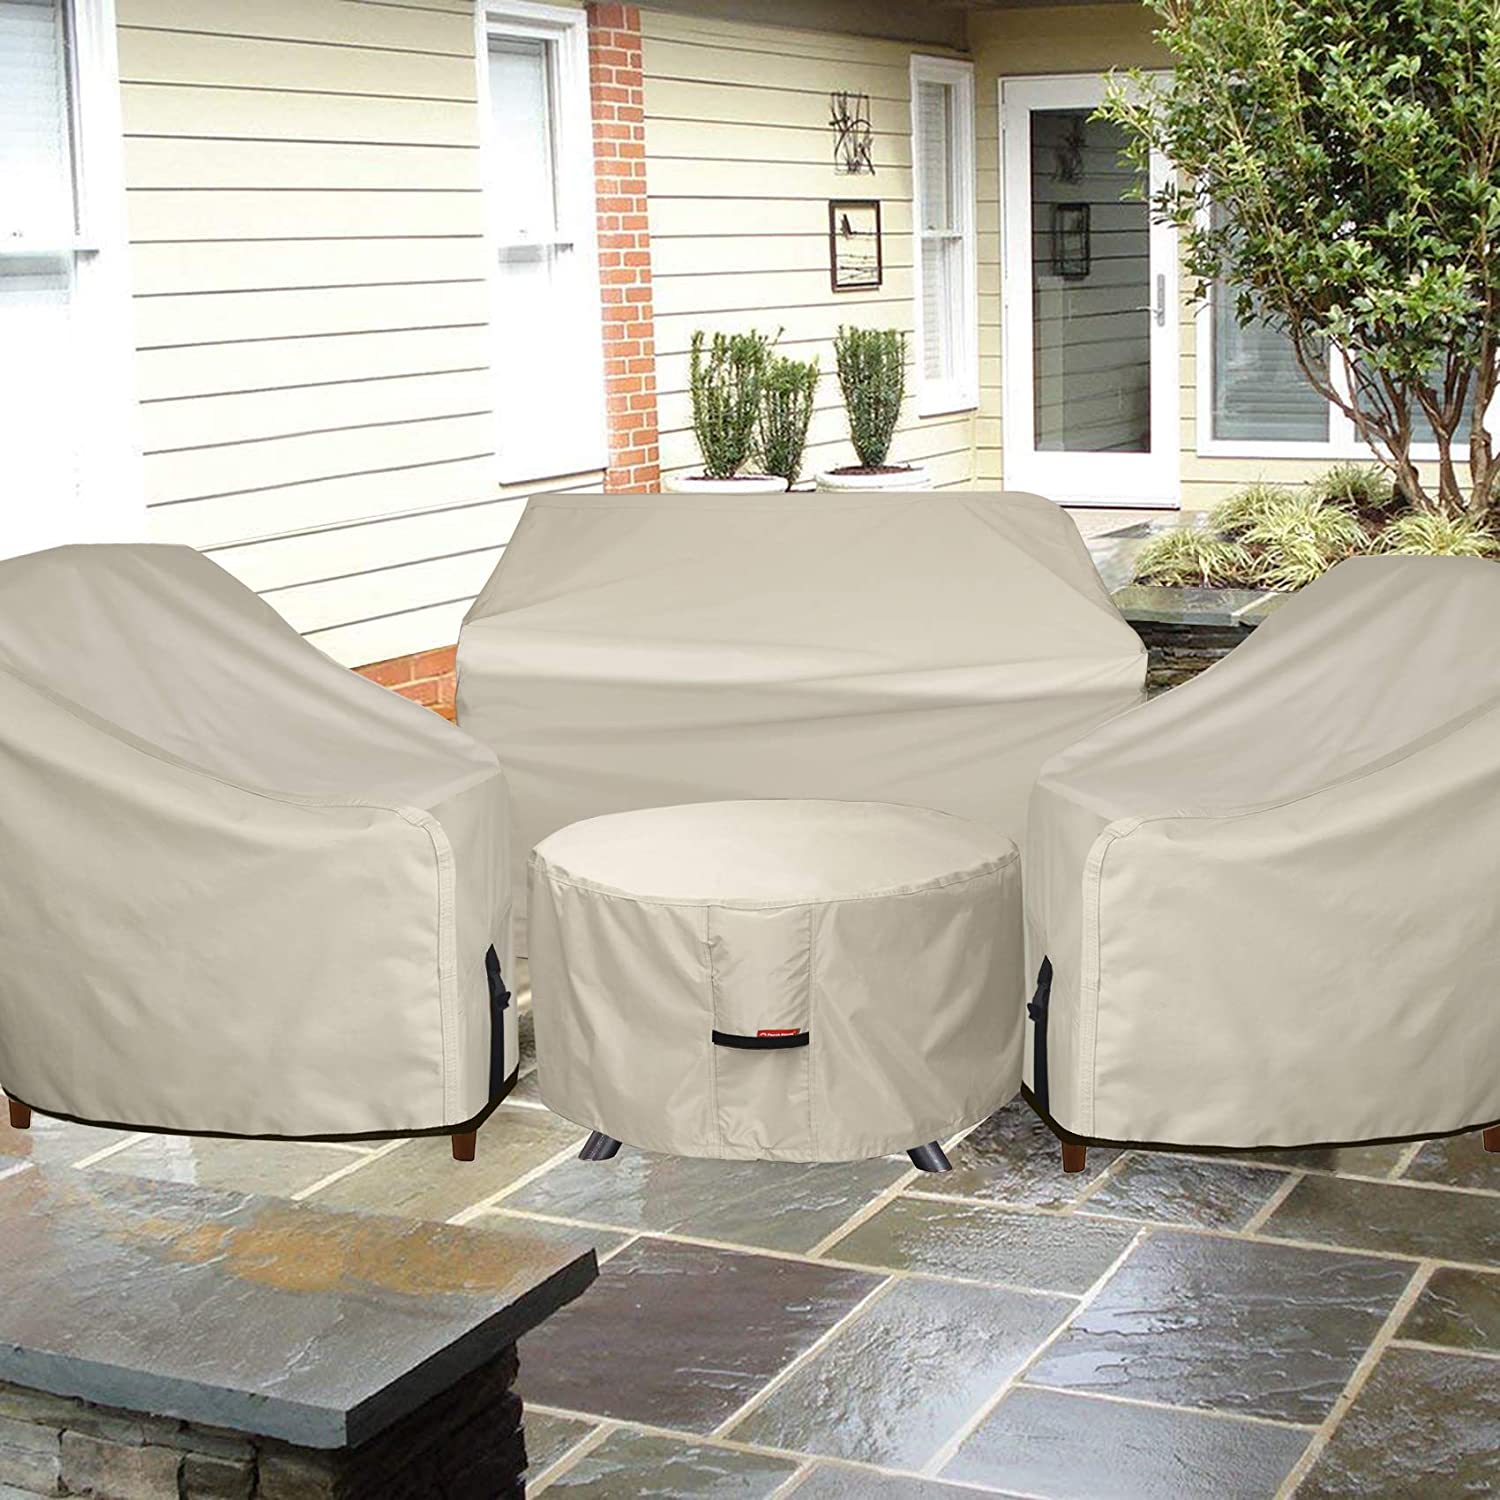 GC-13 garden chair covers (1)(1)